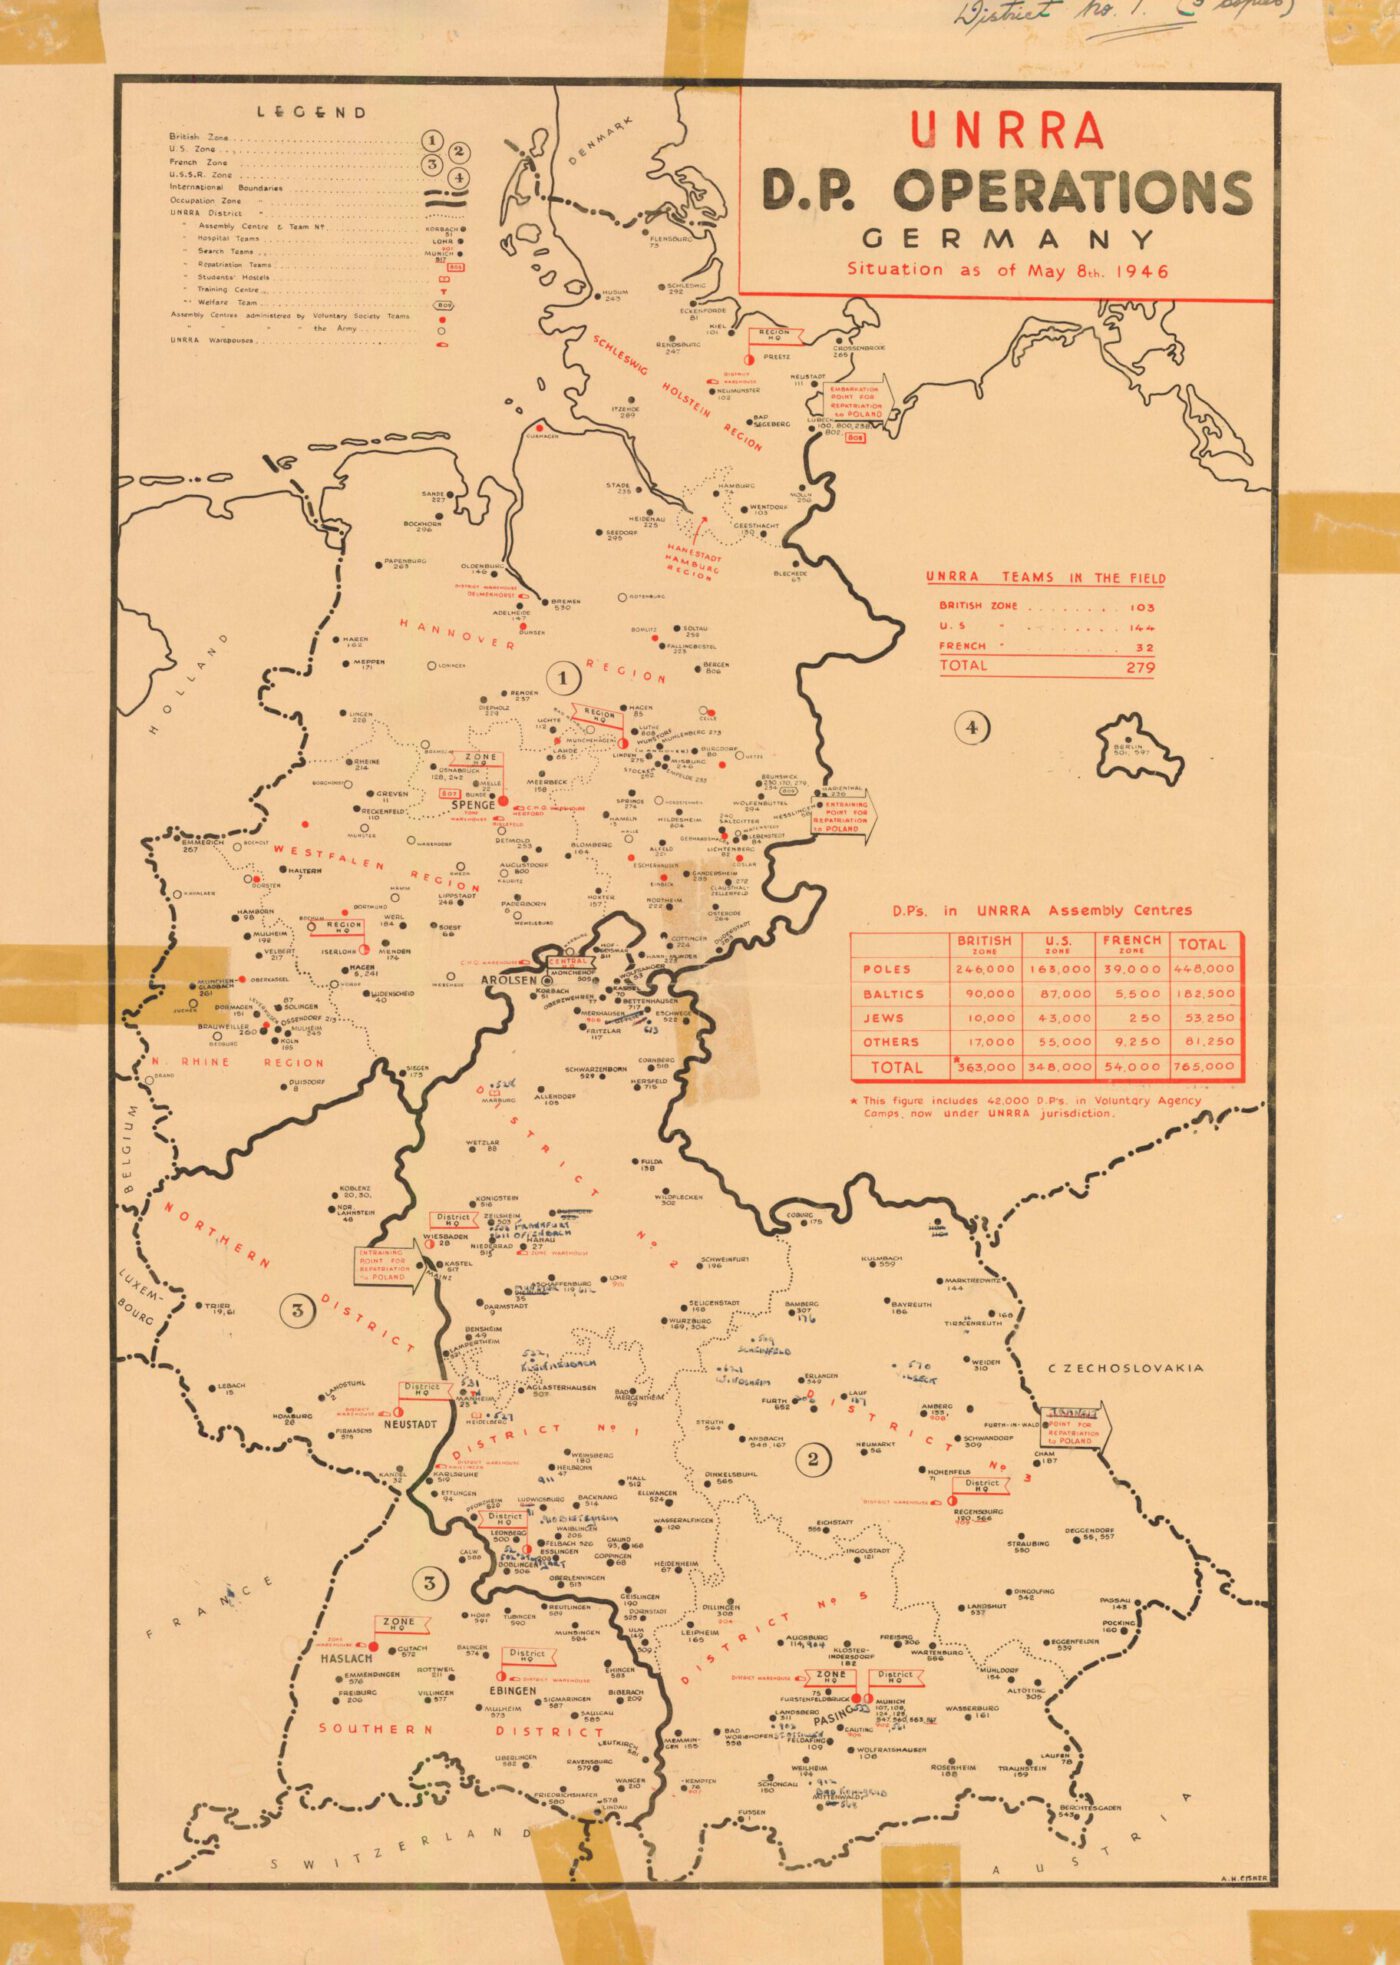 Carte des opérations de l'UNRRA D.P. Allemagne, 8 mai 1946. 6.2.2 / 129799278 ITS Digitales Archiv, Arolsen Archiv